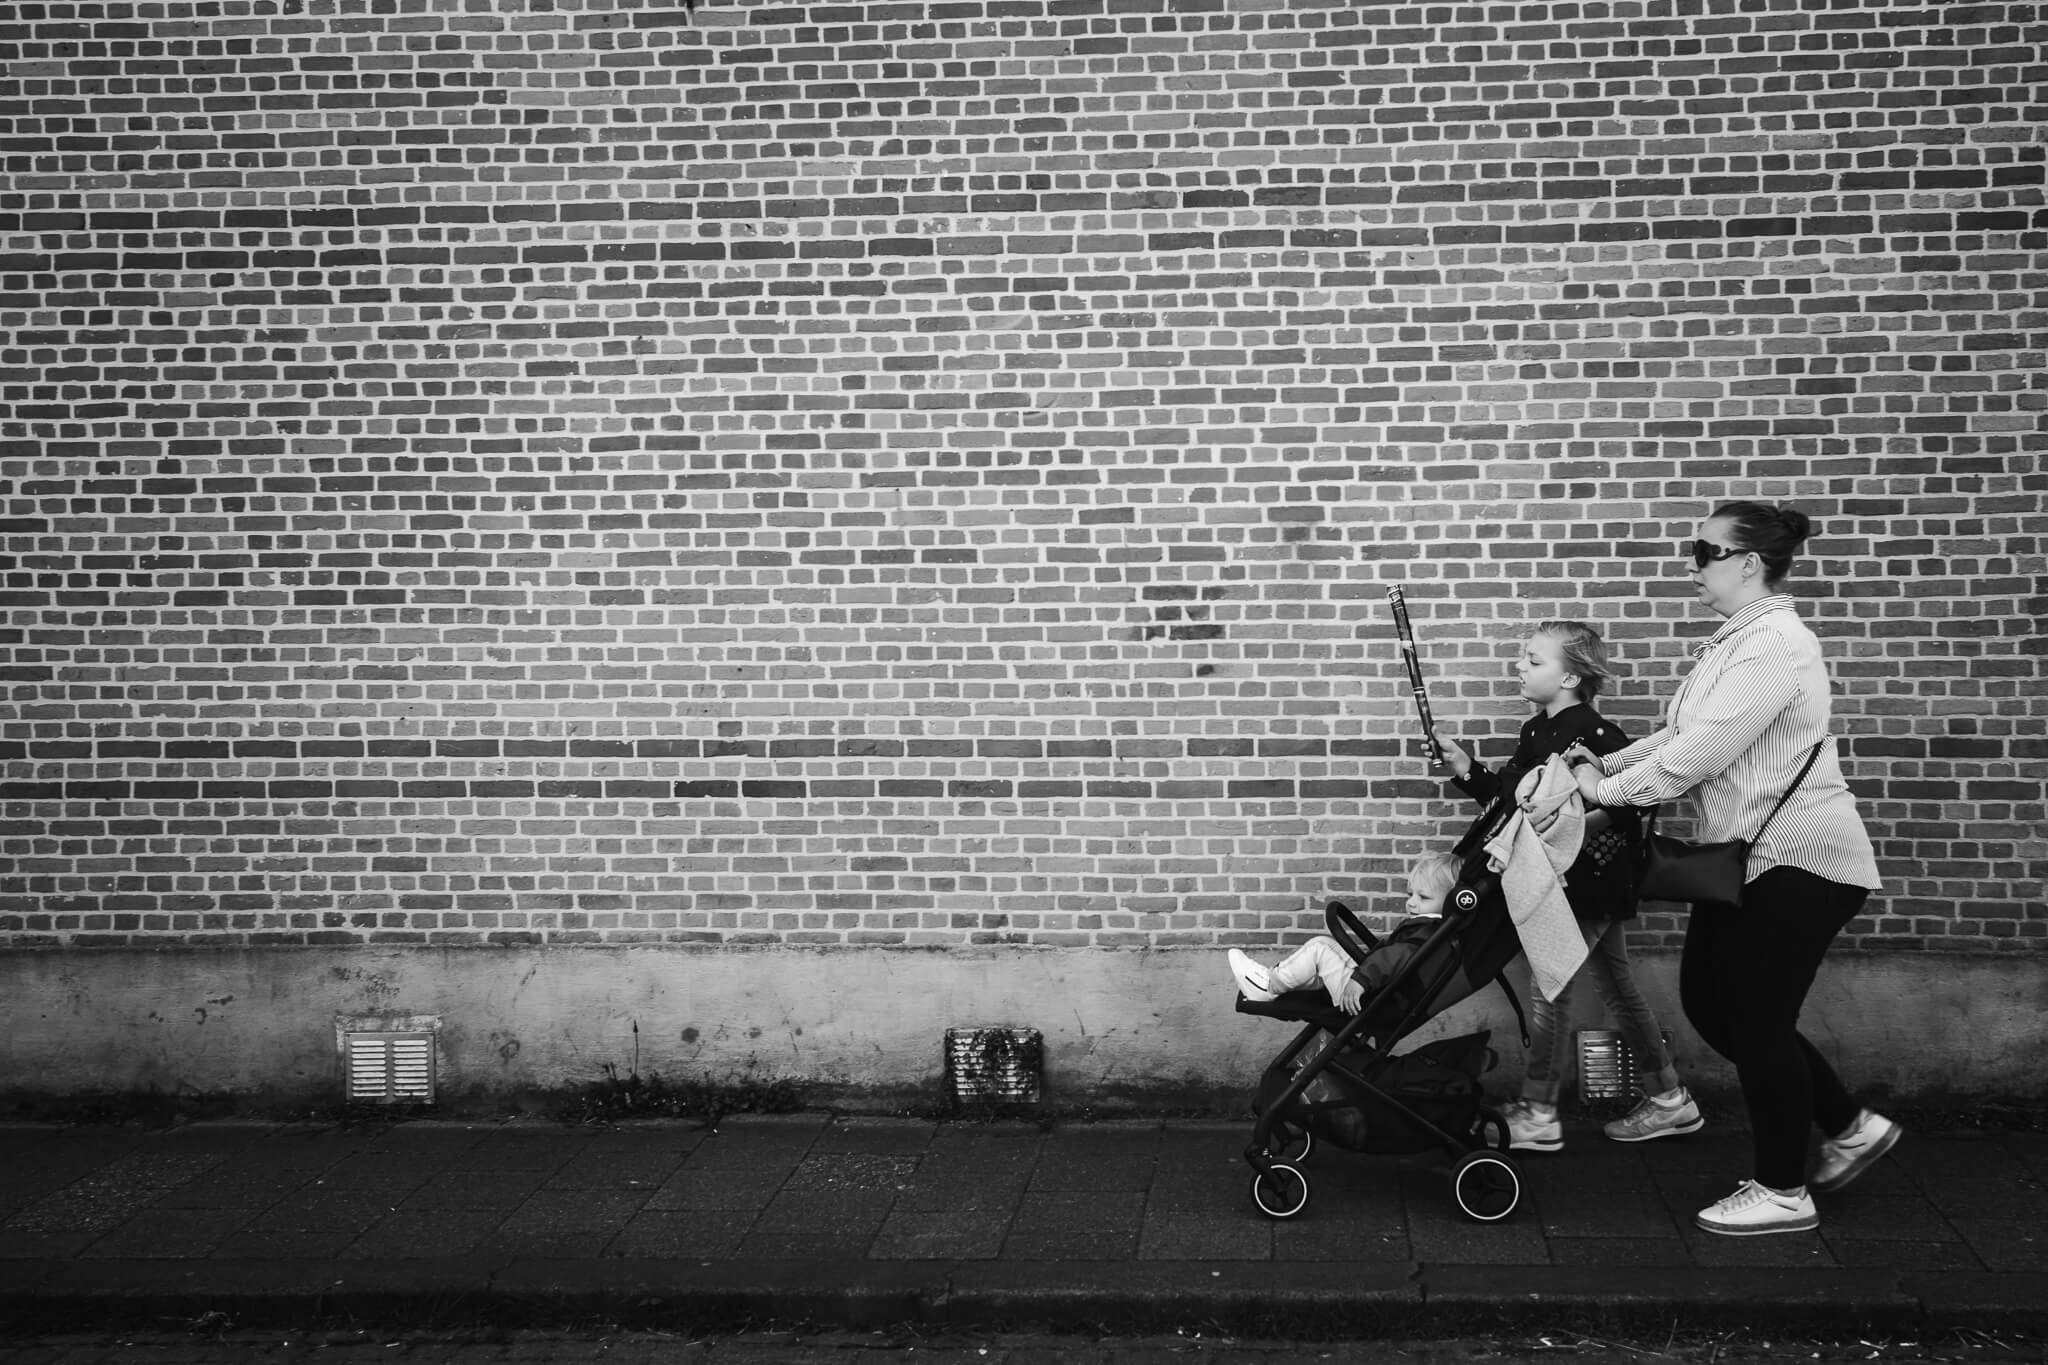 Moeder wandelt met haar zonen door Gouda tijdens een ongeposeerde fotoreportage van haar gezin